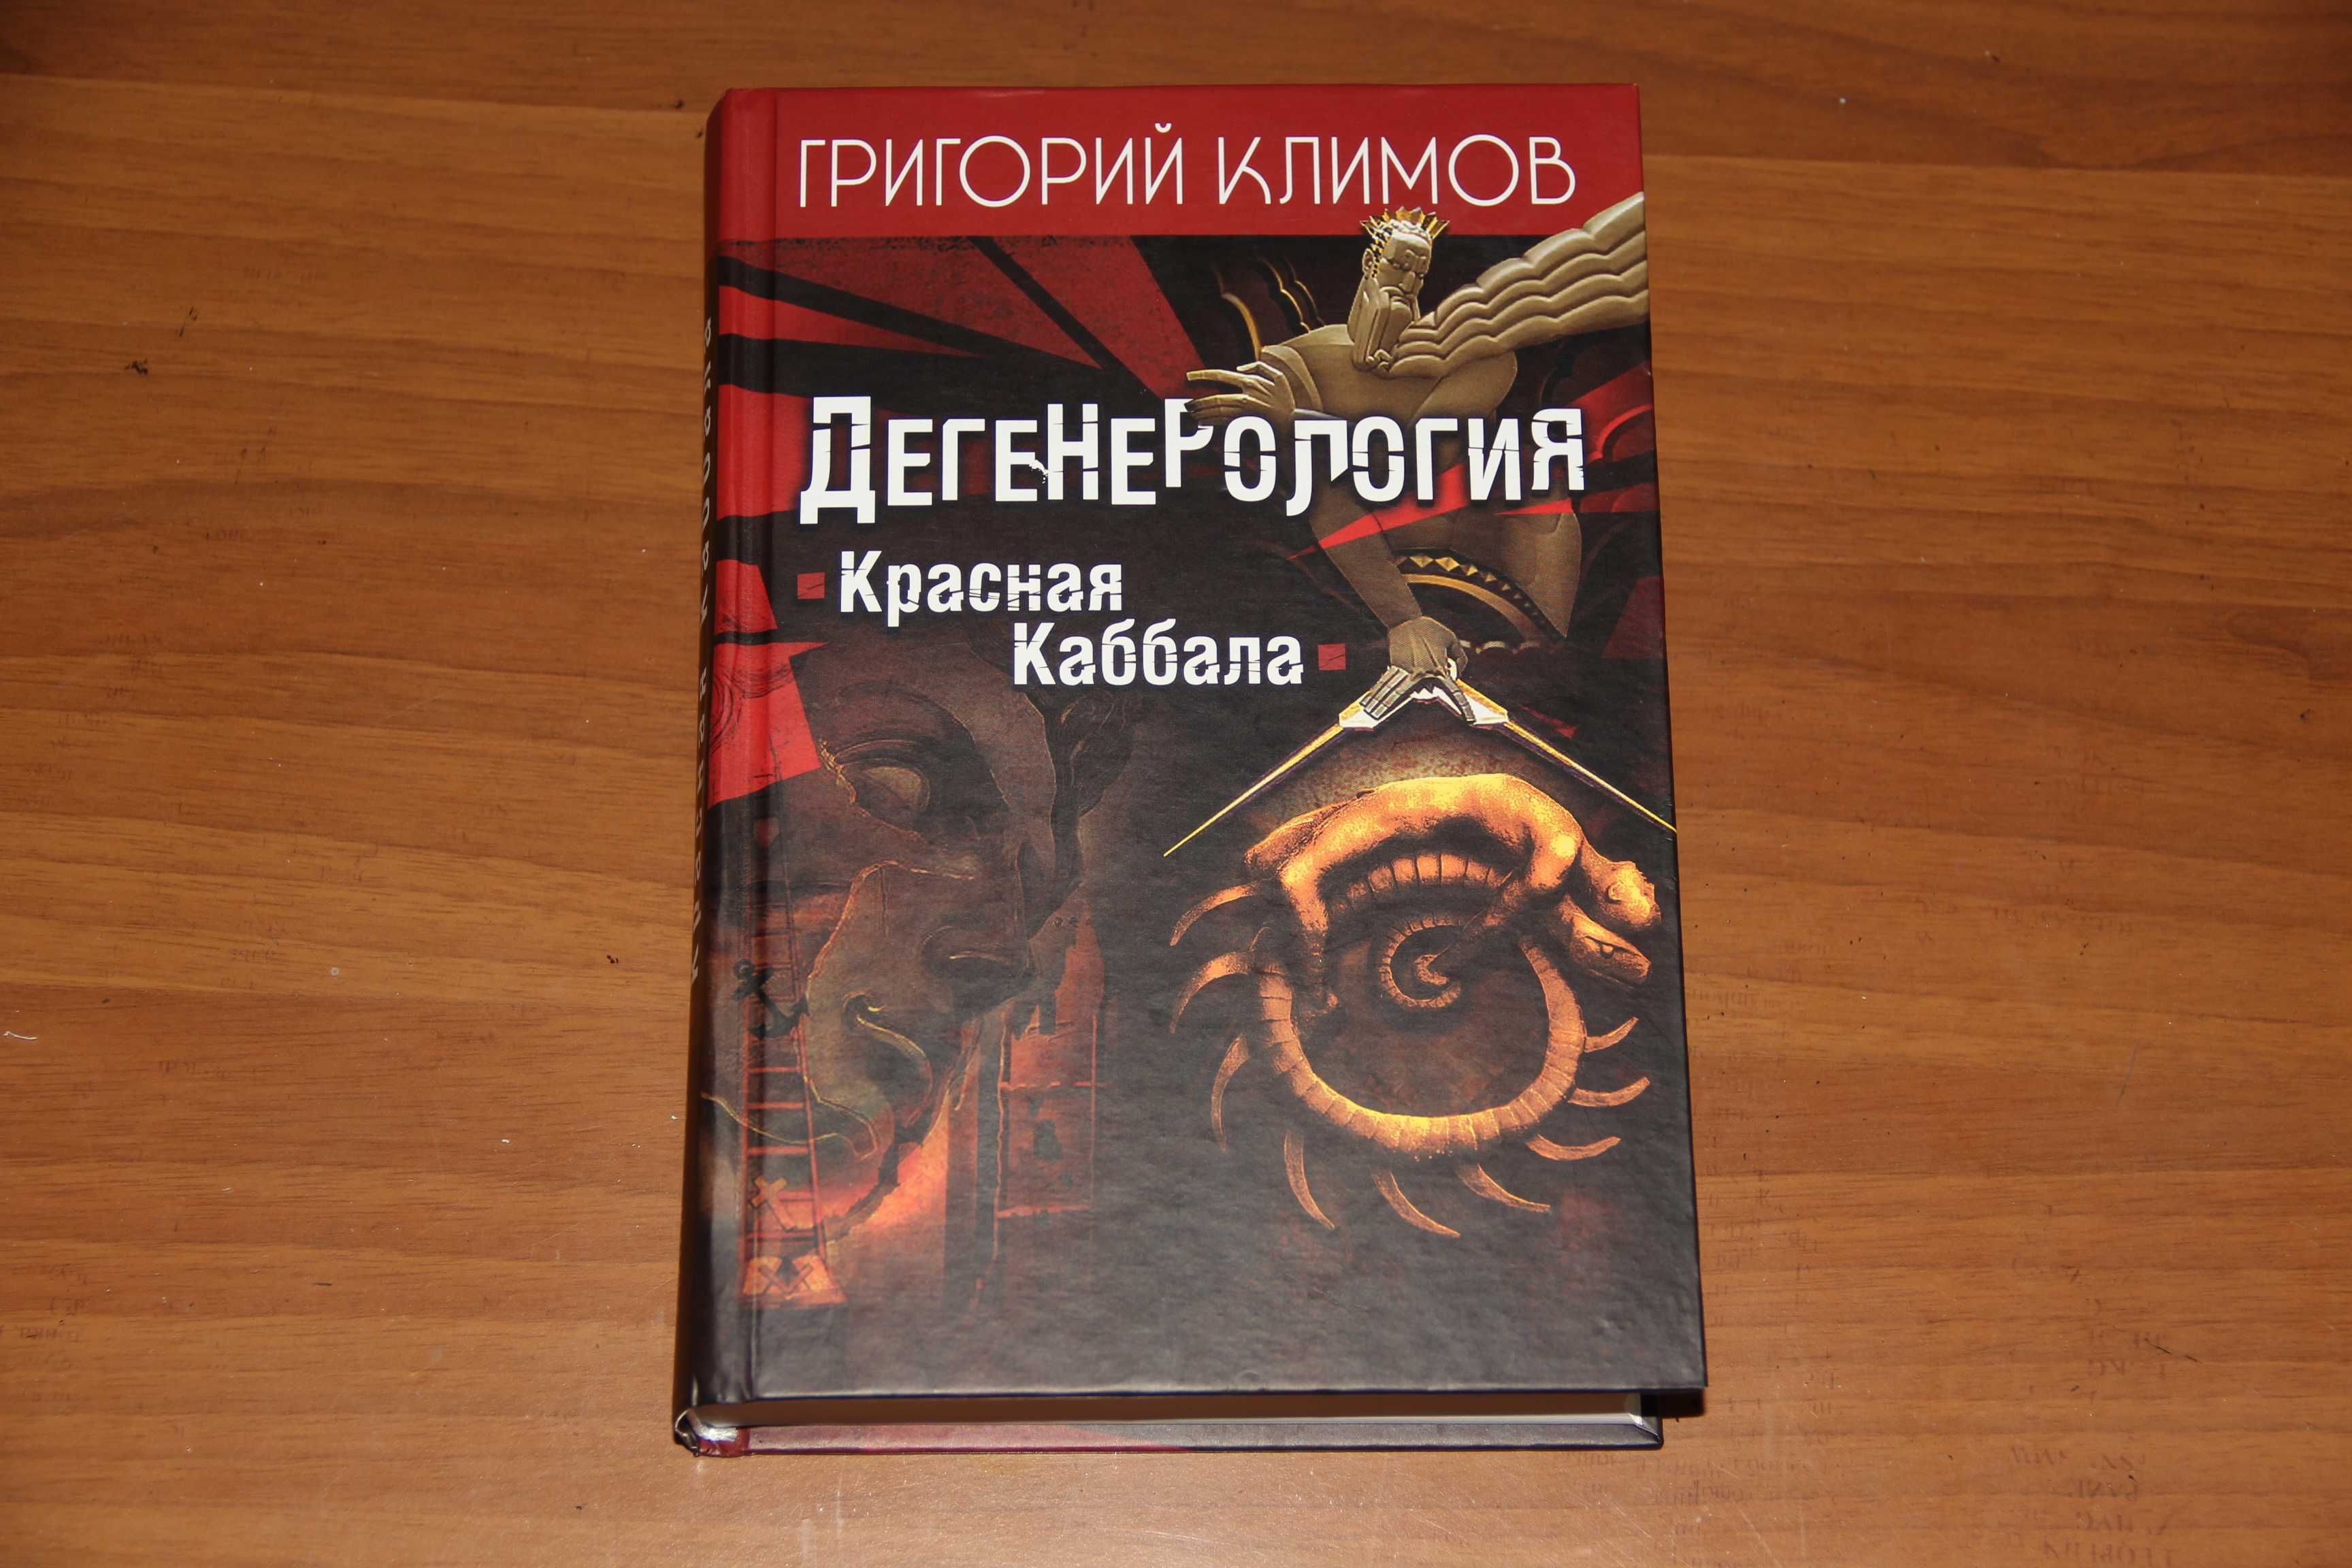 Григорий Климов. Дегенерология: Красная Каббала. 2012, 688 стр.